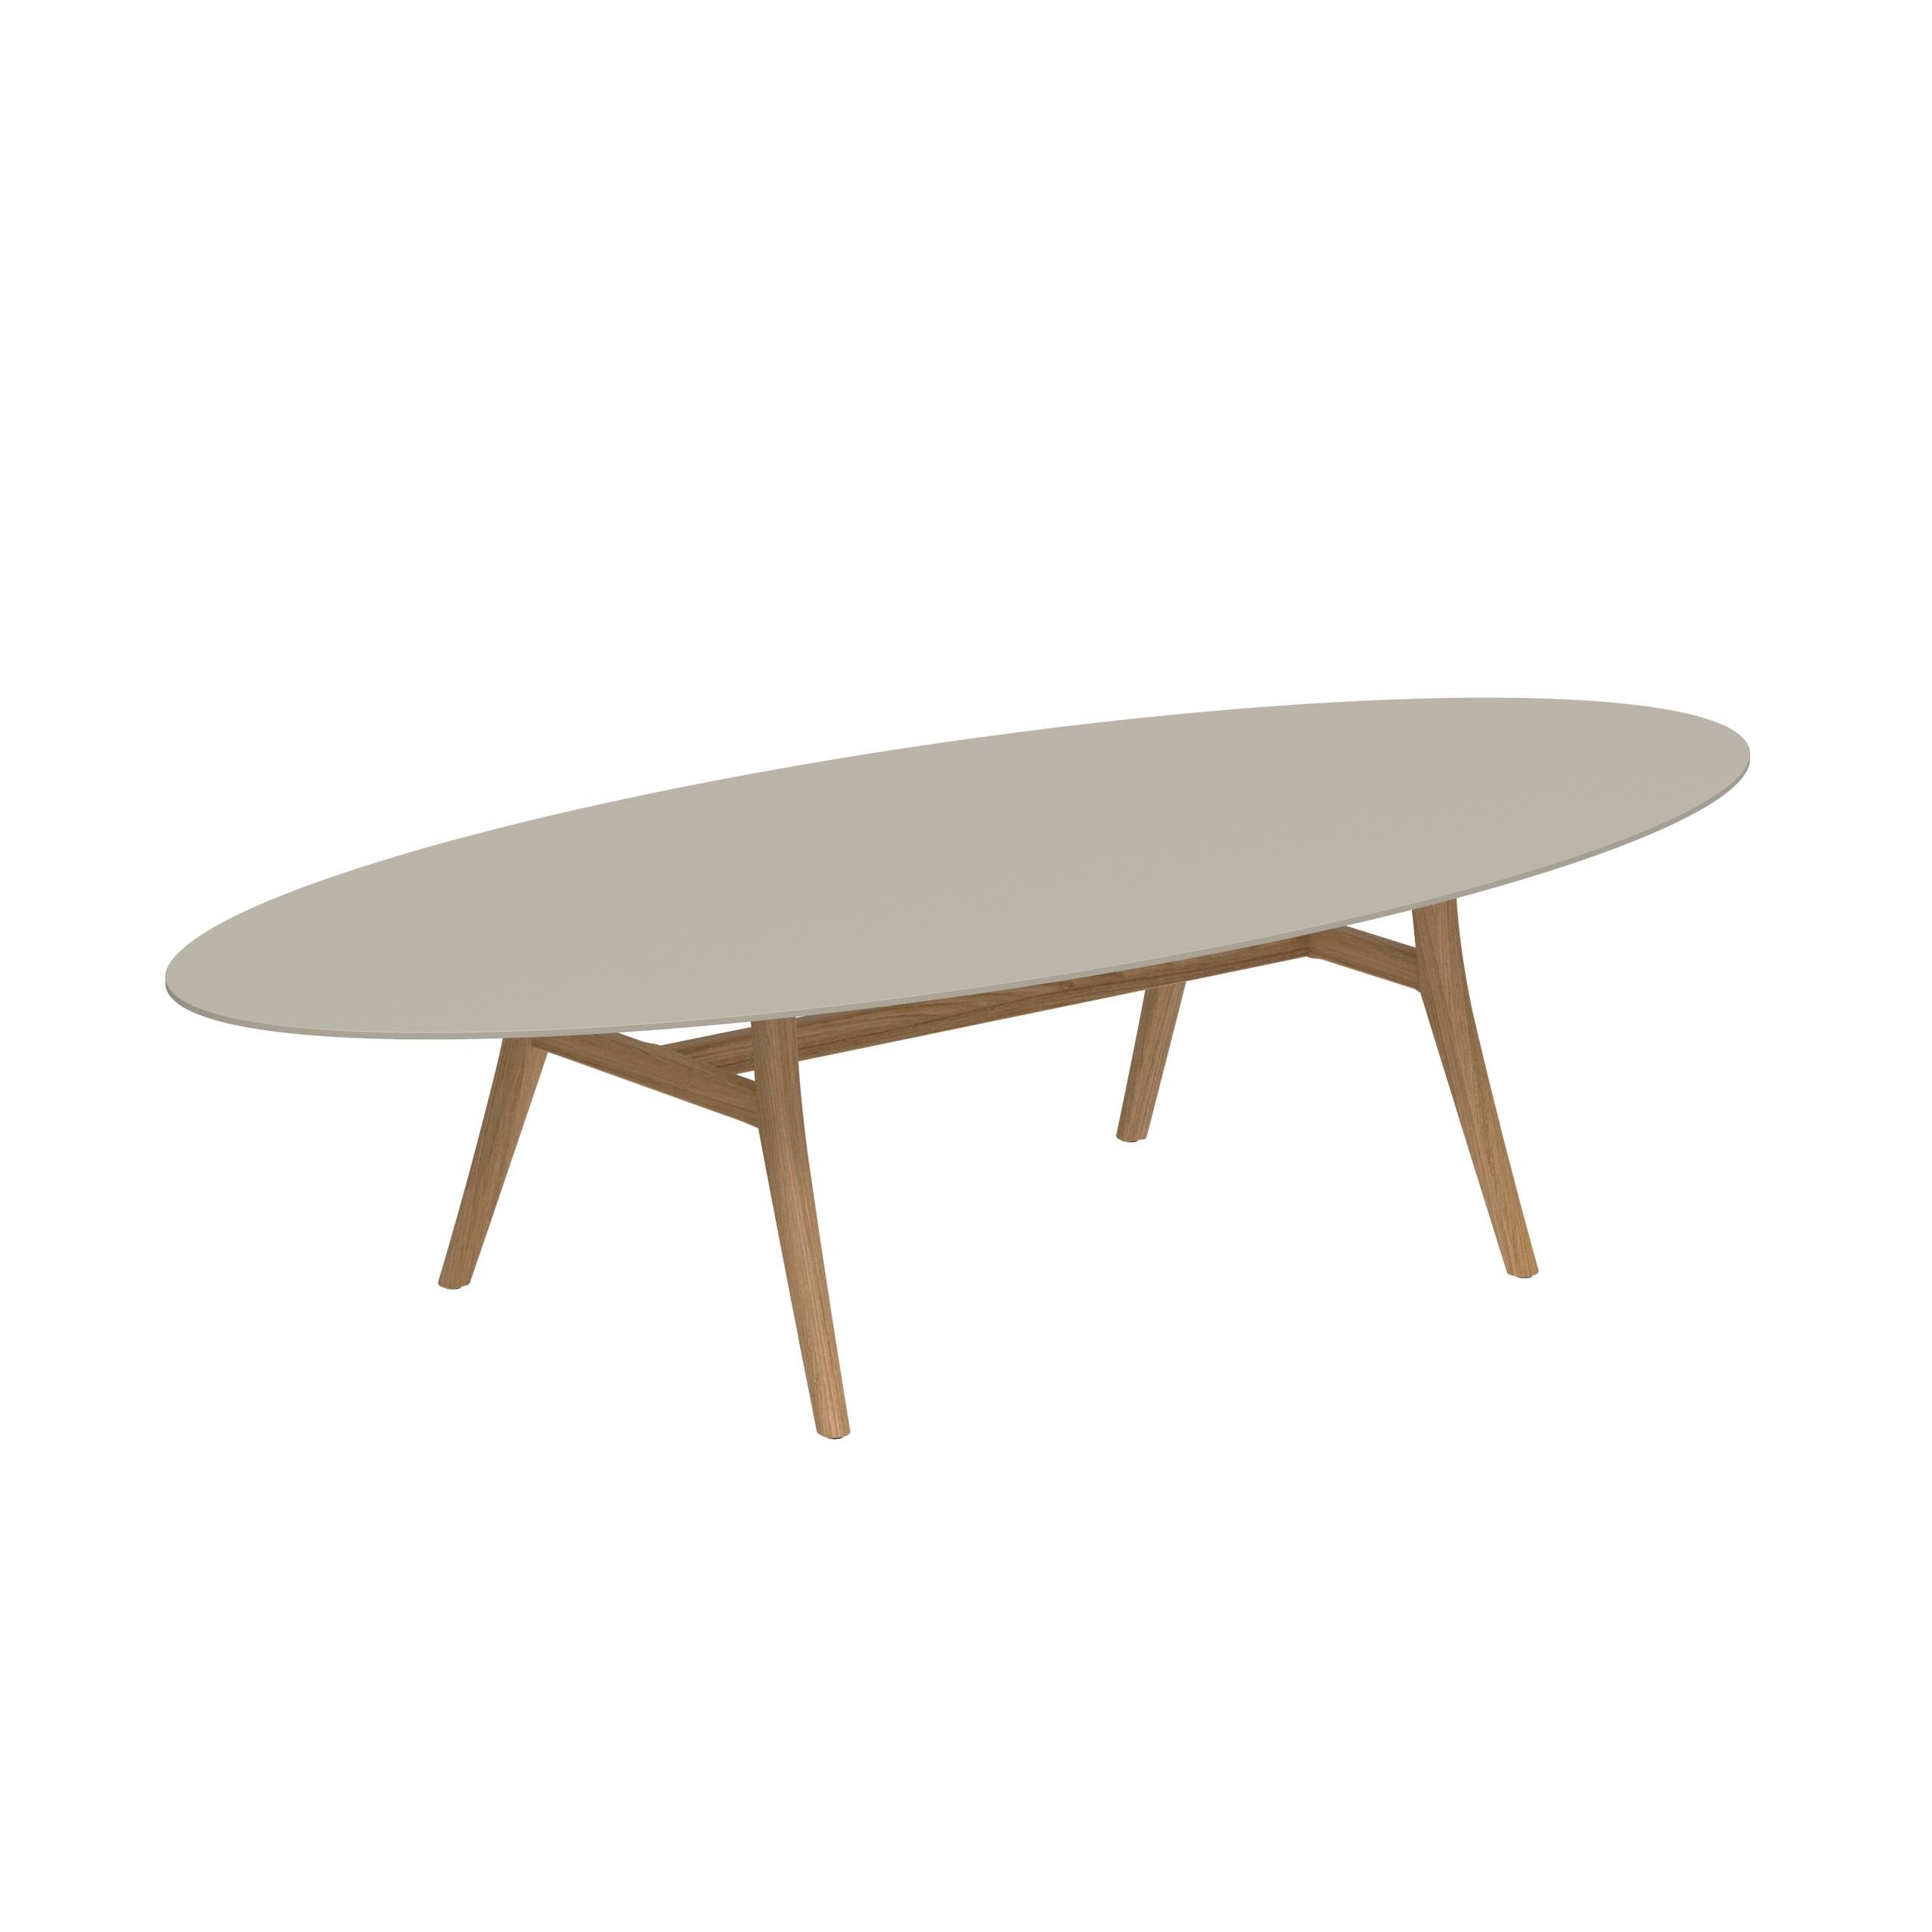 Zidiz Table 320x140cm Teak Legs - Ceramic Table Top Pearl Grey